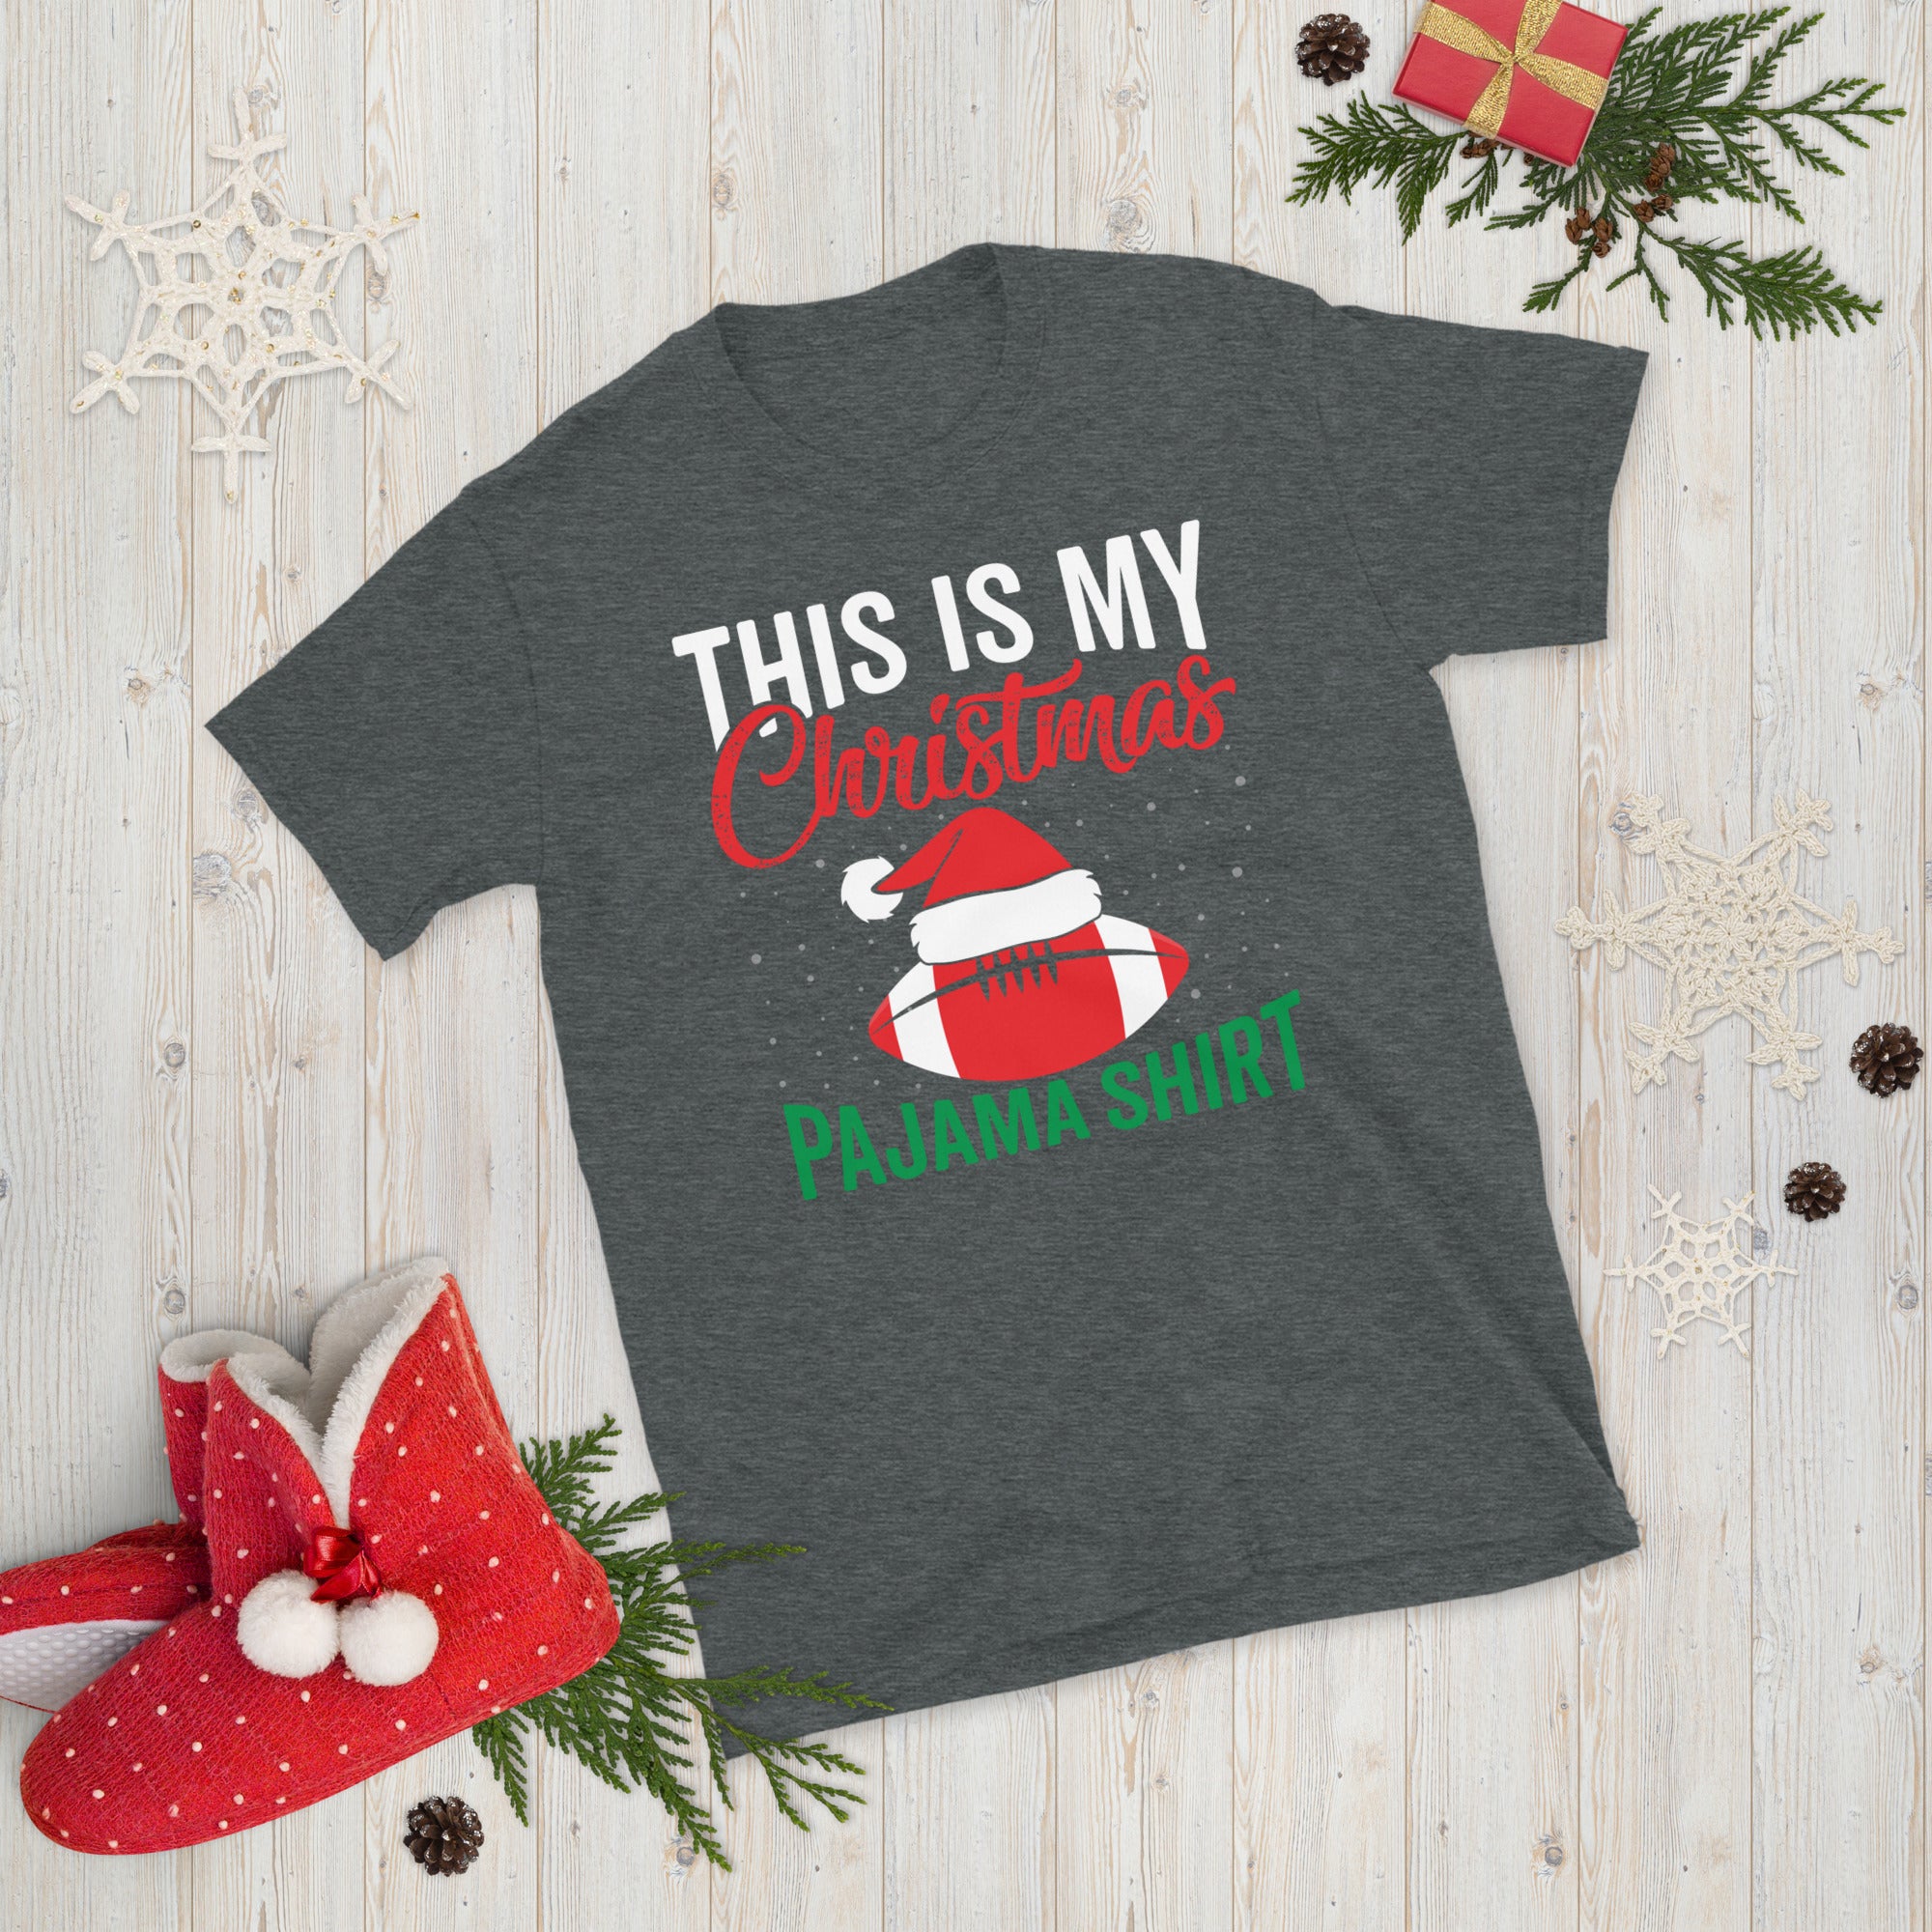 This Is My Christmas Pajama Shirt, Christmas Football Shirt, American Football T Shirt, Football Christmas Gift, Xmas Football Tee - Madeinsea©